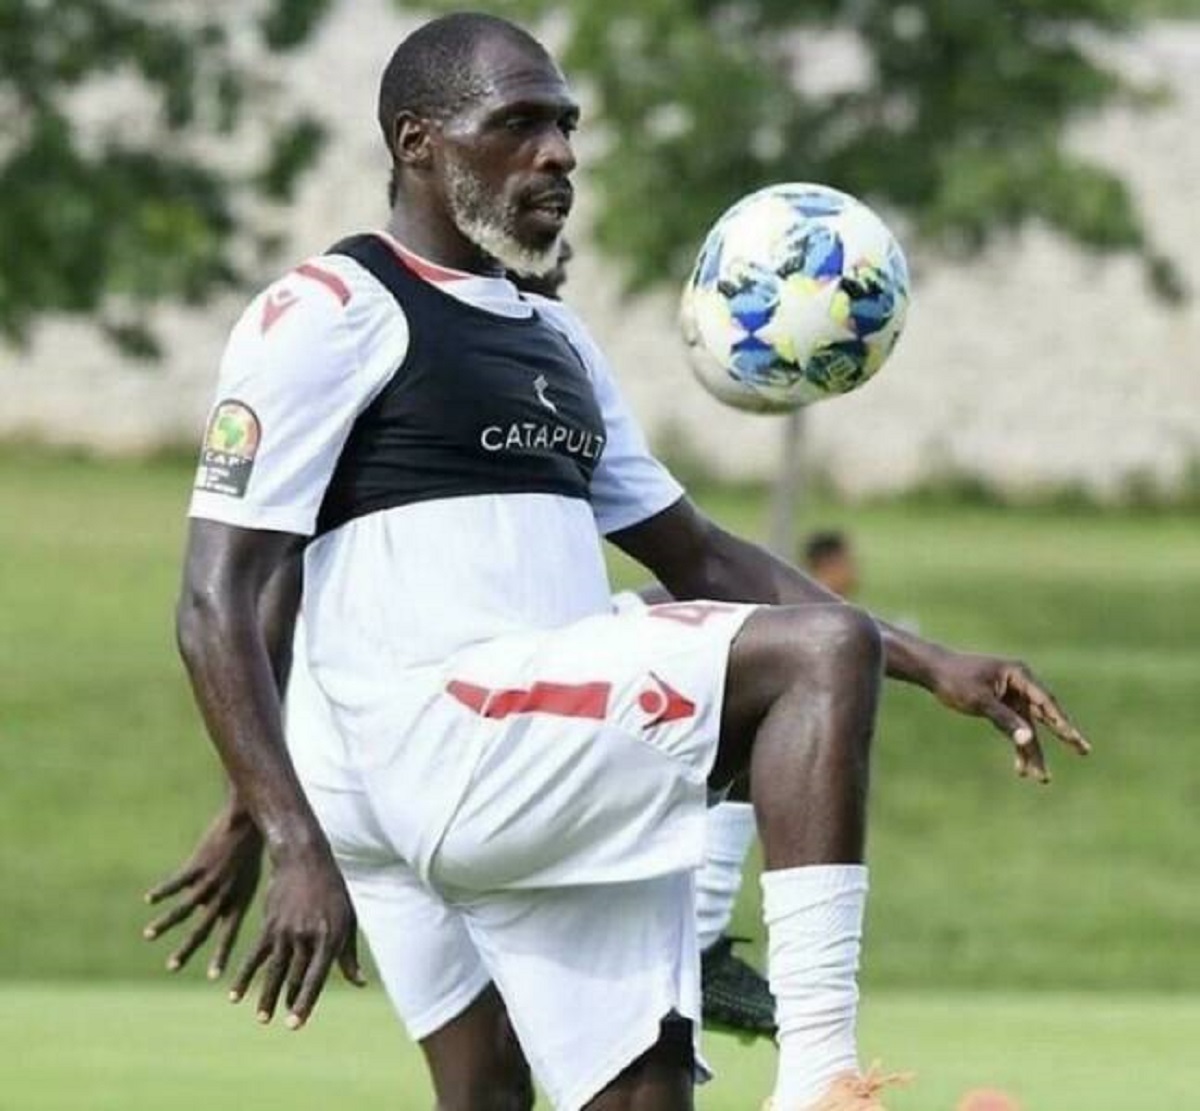 "26 Year Old Kenyan Footballer, Joash Onyango"